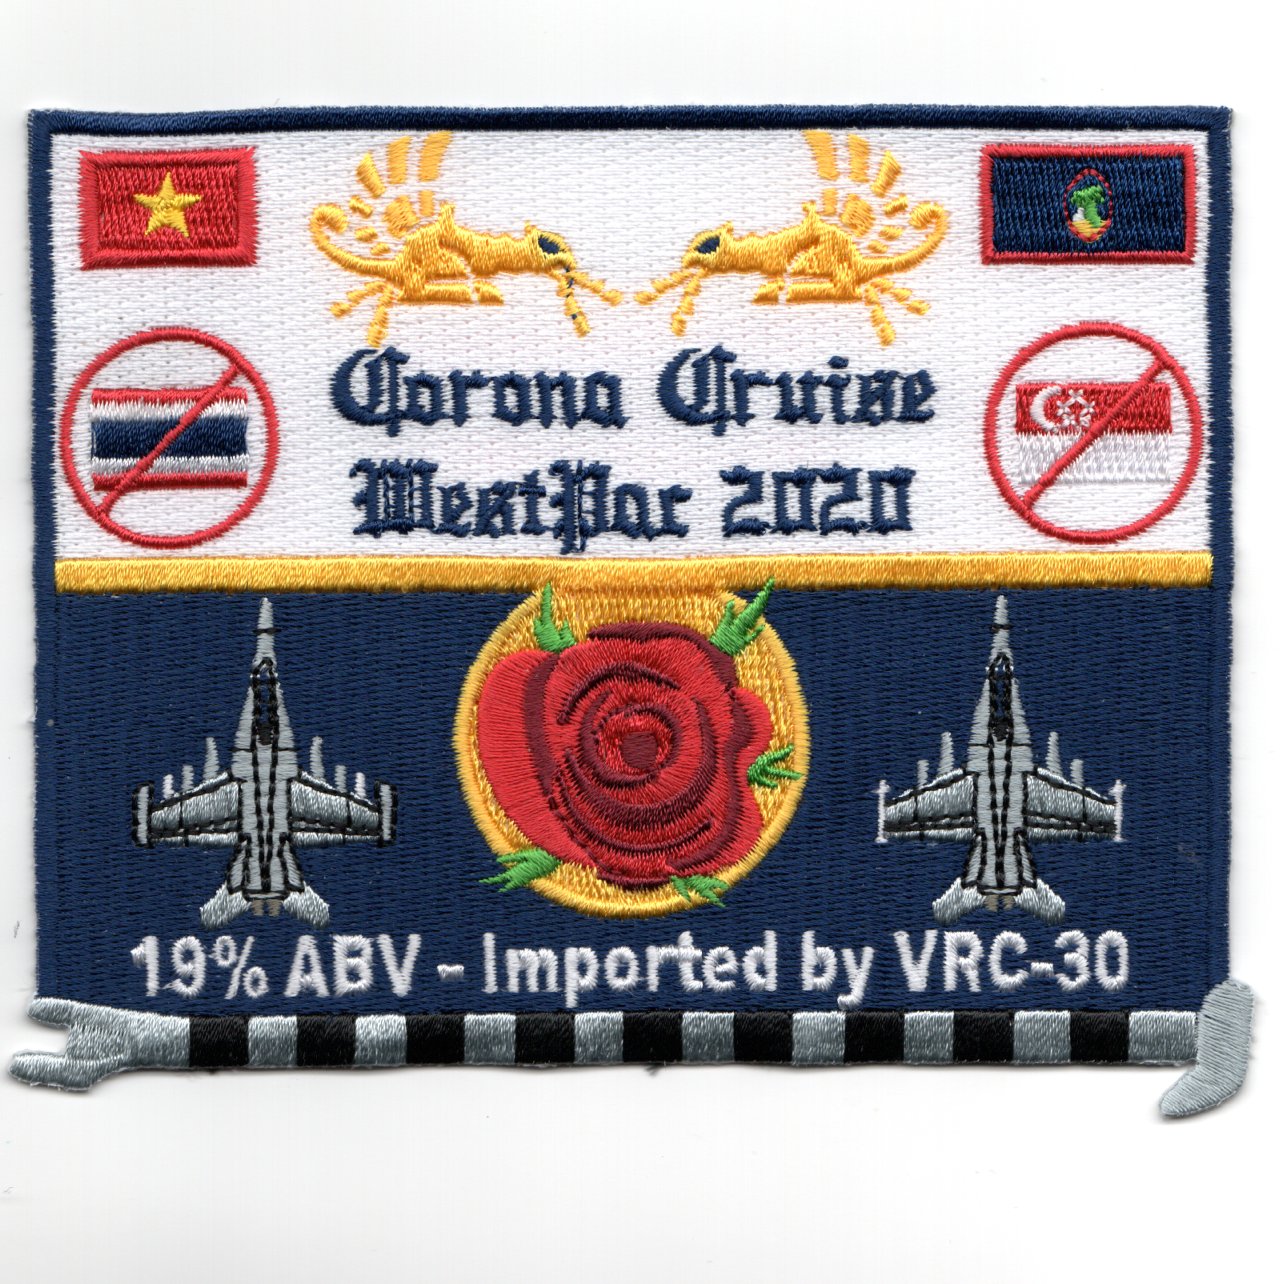 VAQ-142 2020 WestPac 'Corona' Patch (Rect)